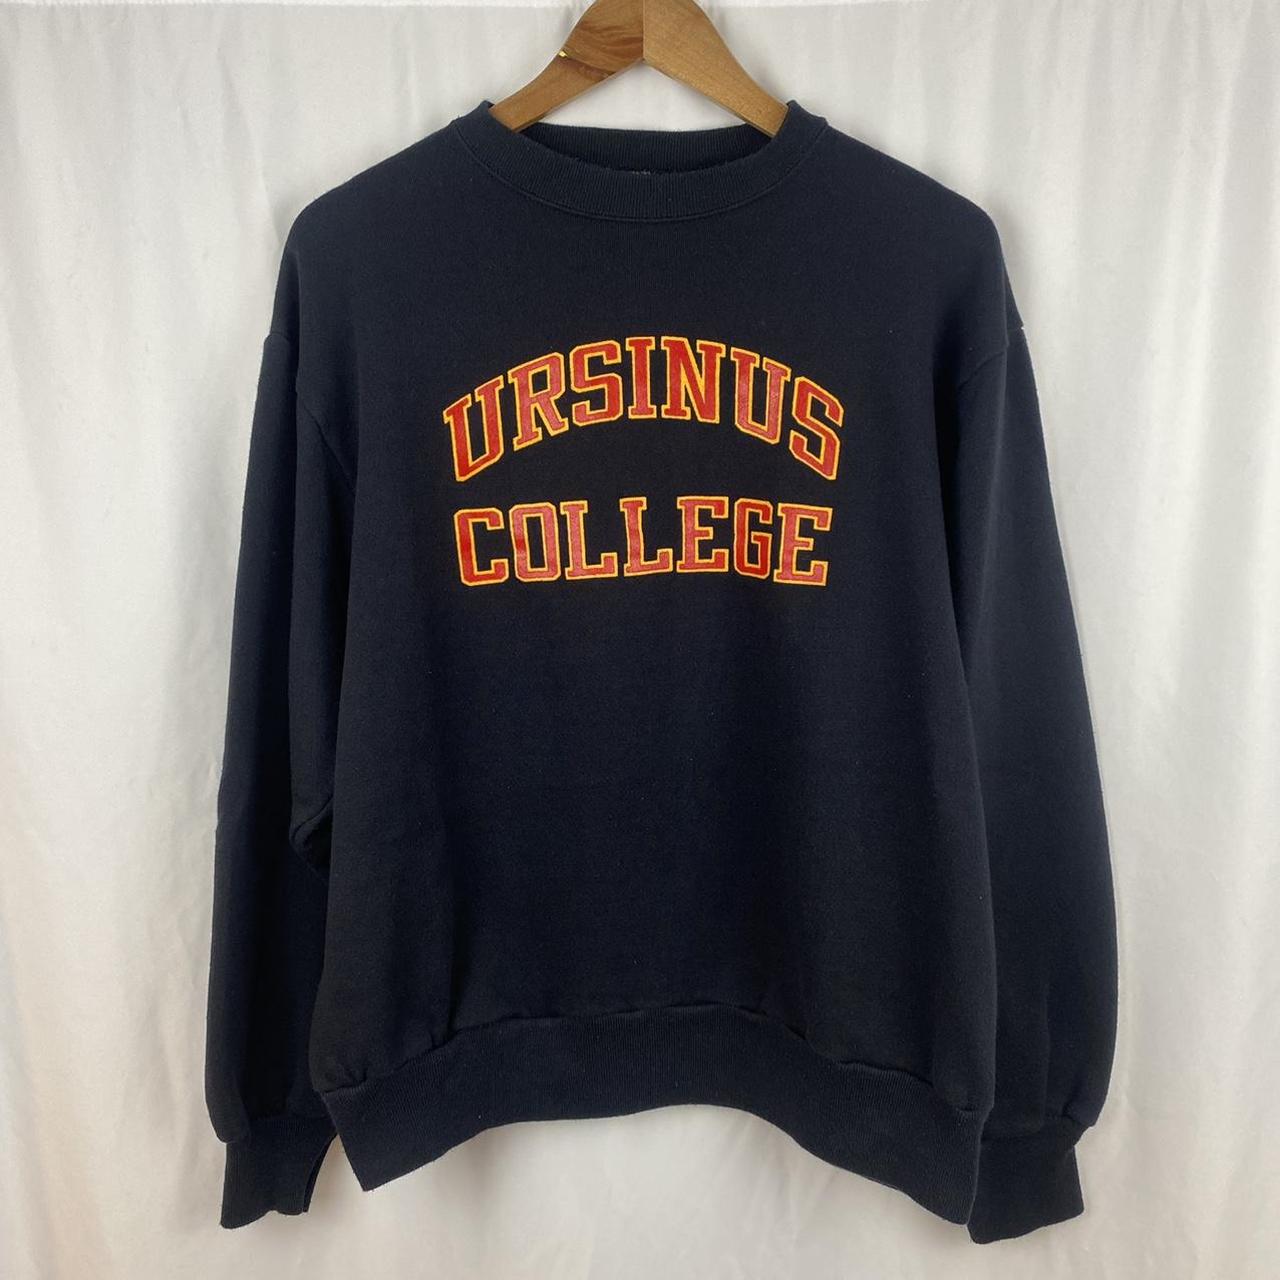 Vintage 80s Champion Ursinus College Collegiate... - Depop